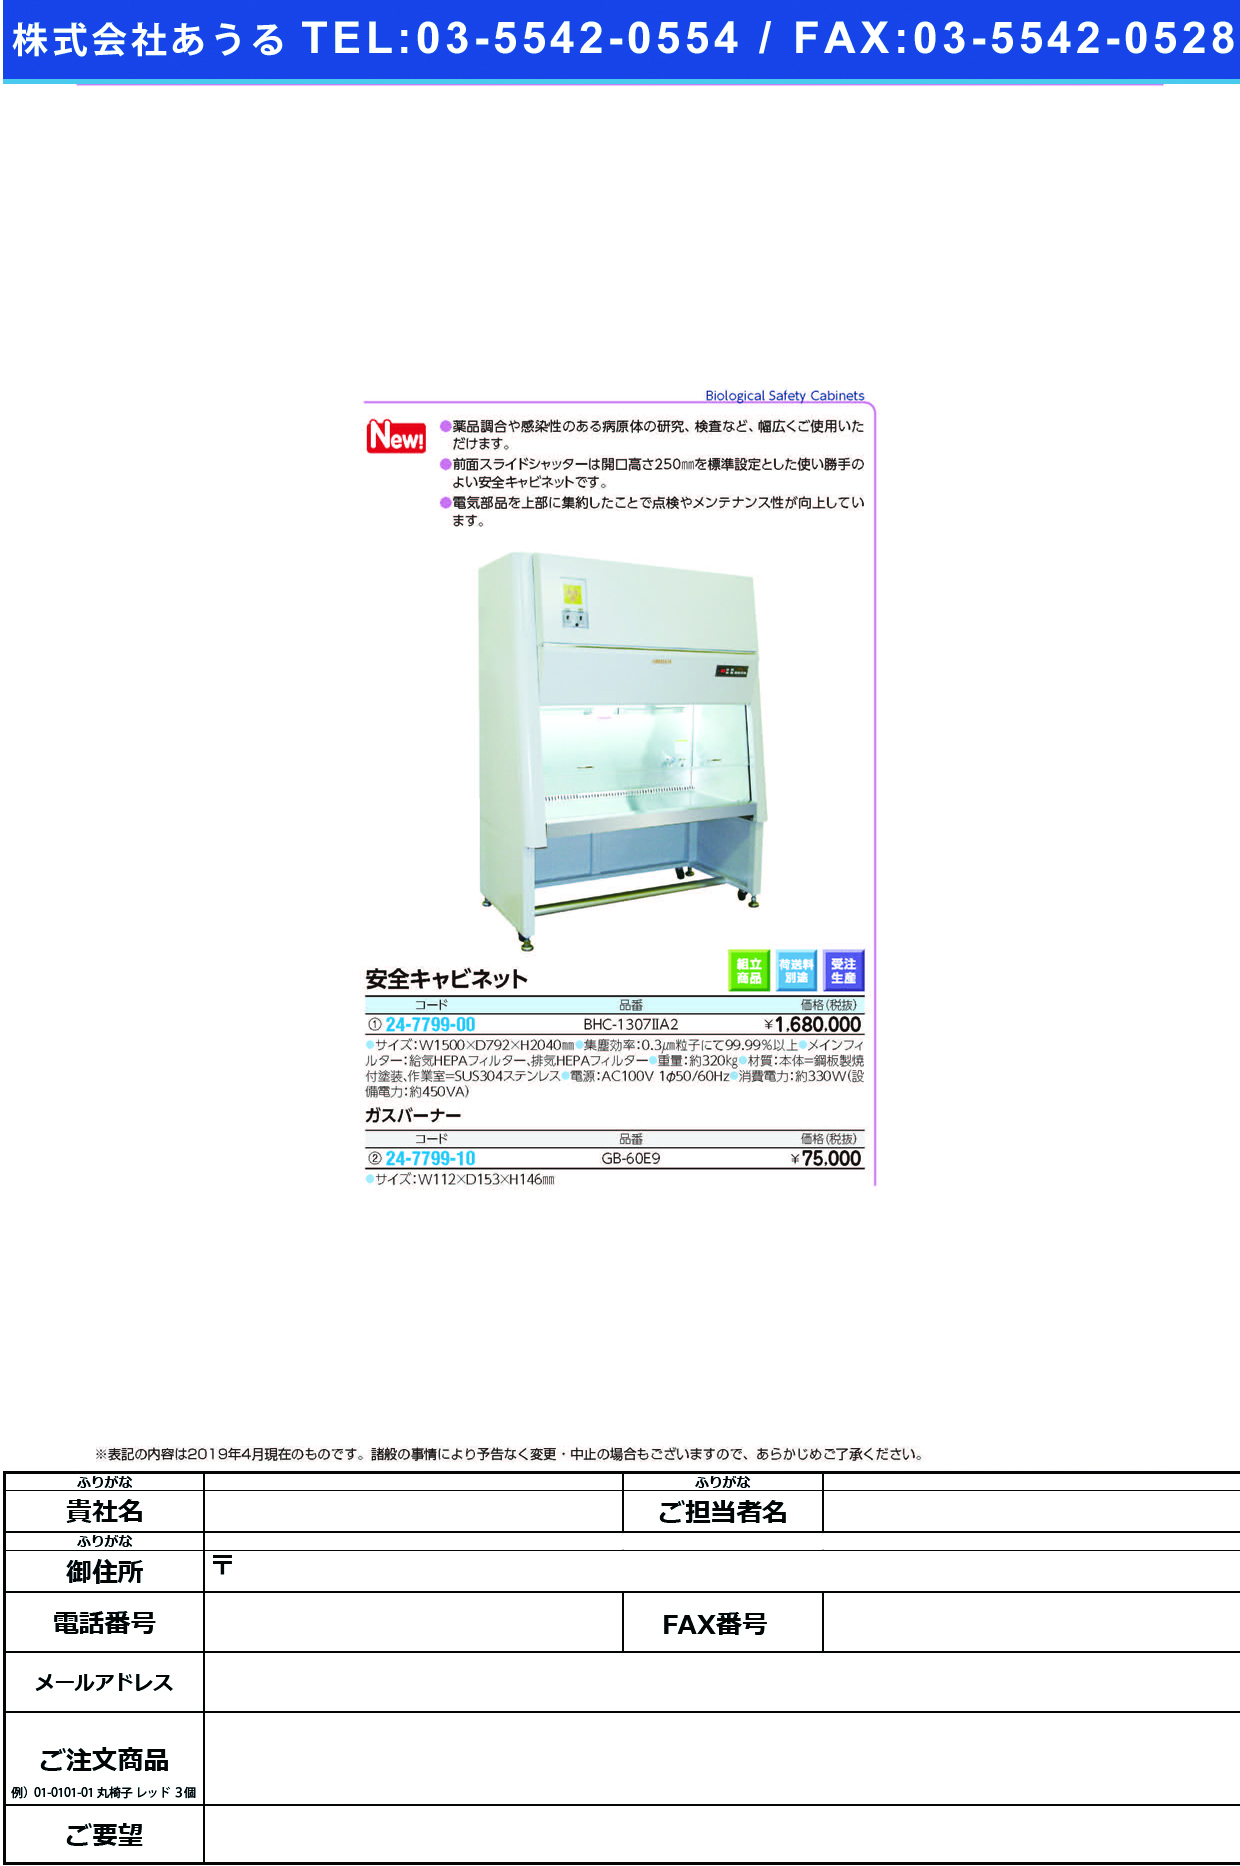 (24-7799-10)ガスバーナーGB-60E9 ｶﾞｽﾊﾞｰﾅｰ(日本エアーテック)【1台単位】【2019年カタログ商品】